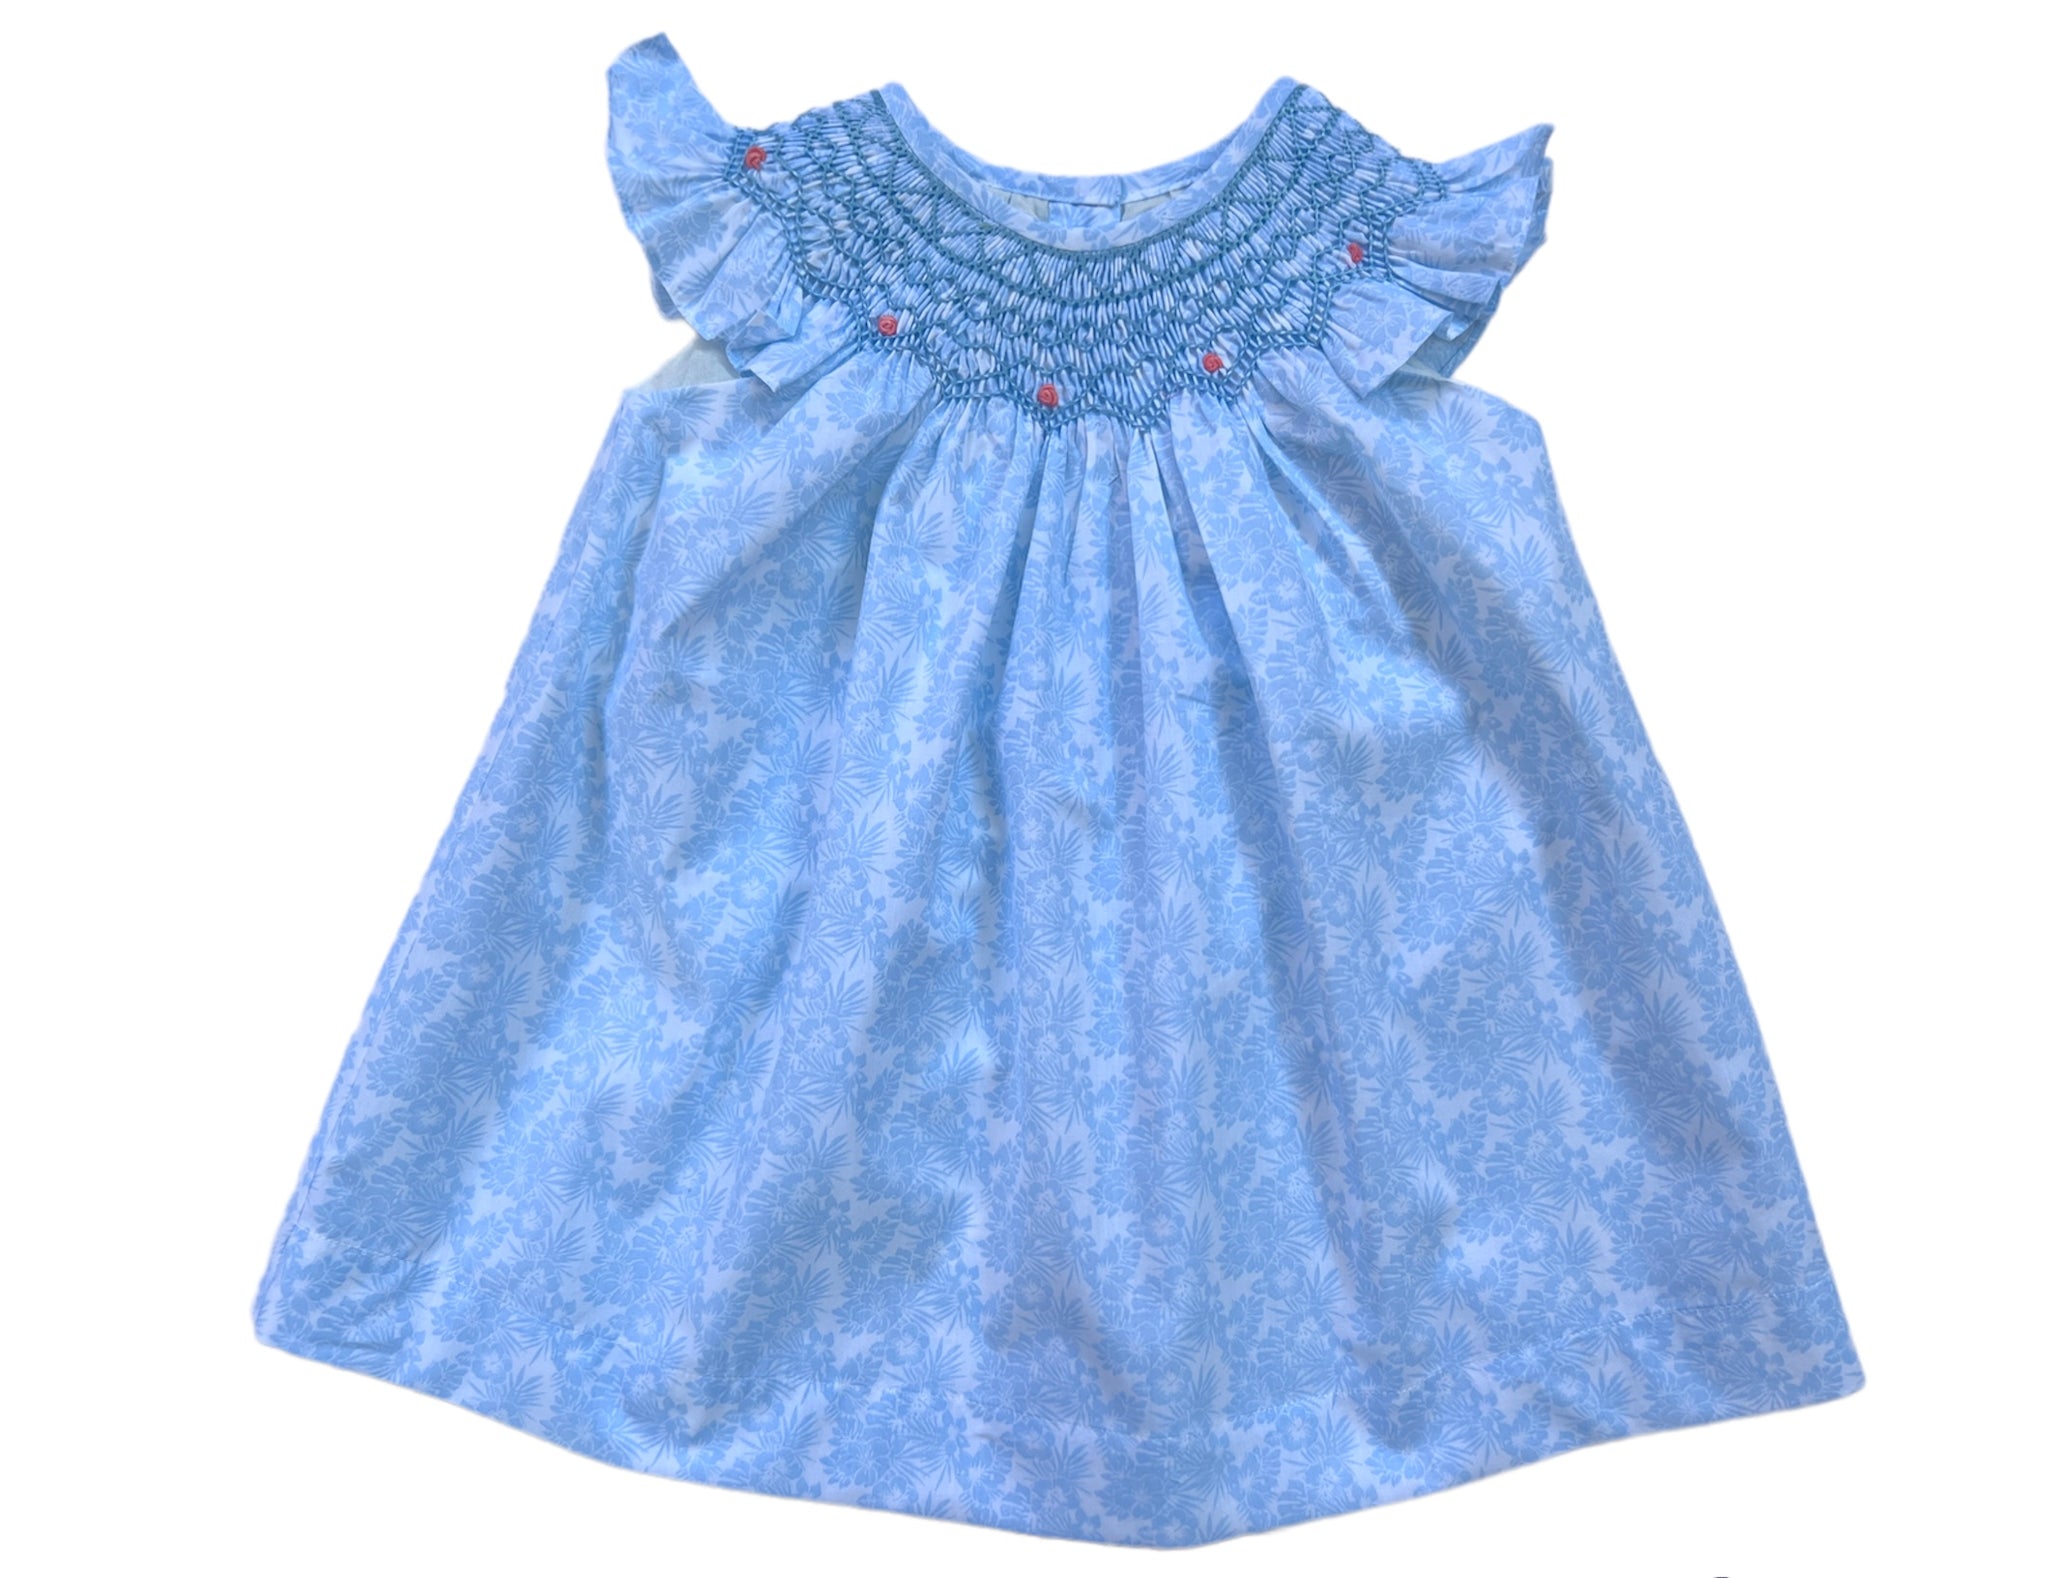 Pastel blue floral smocked dress